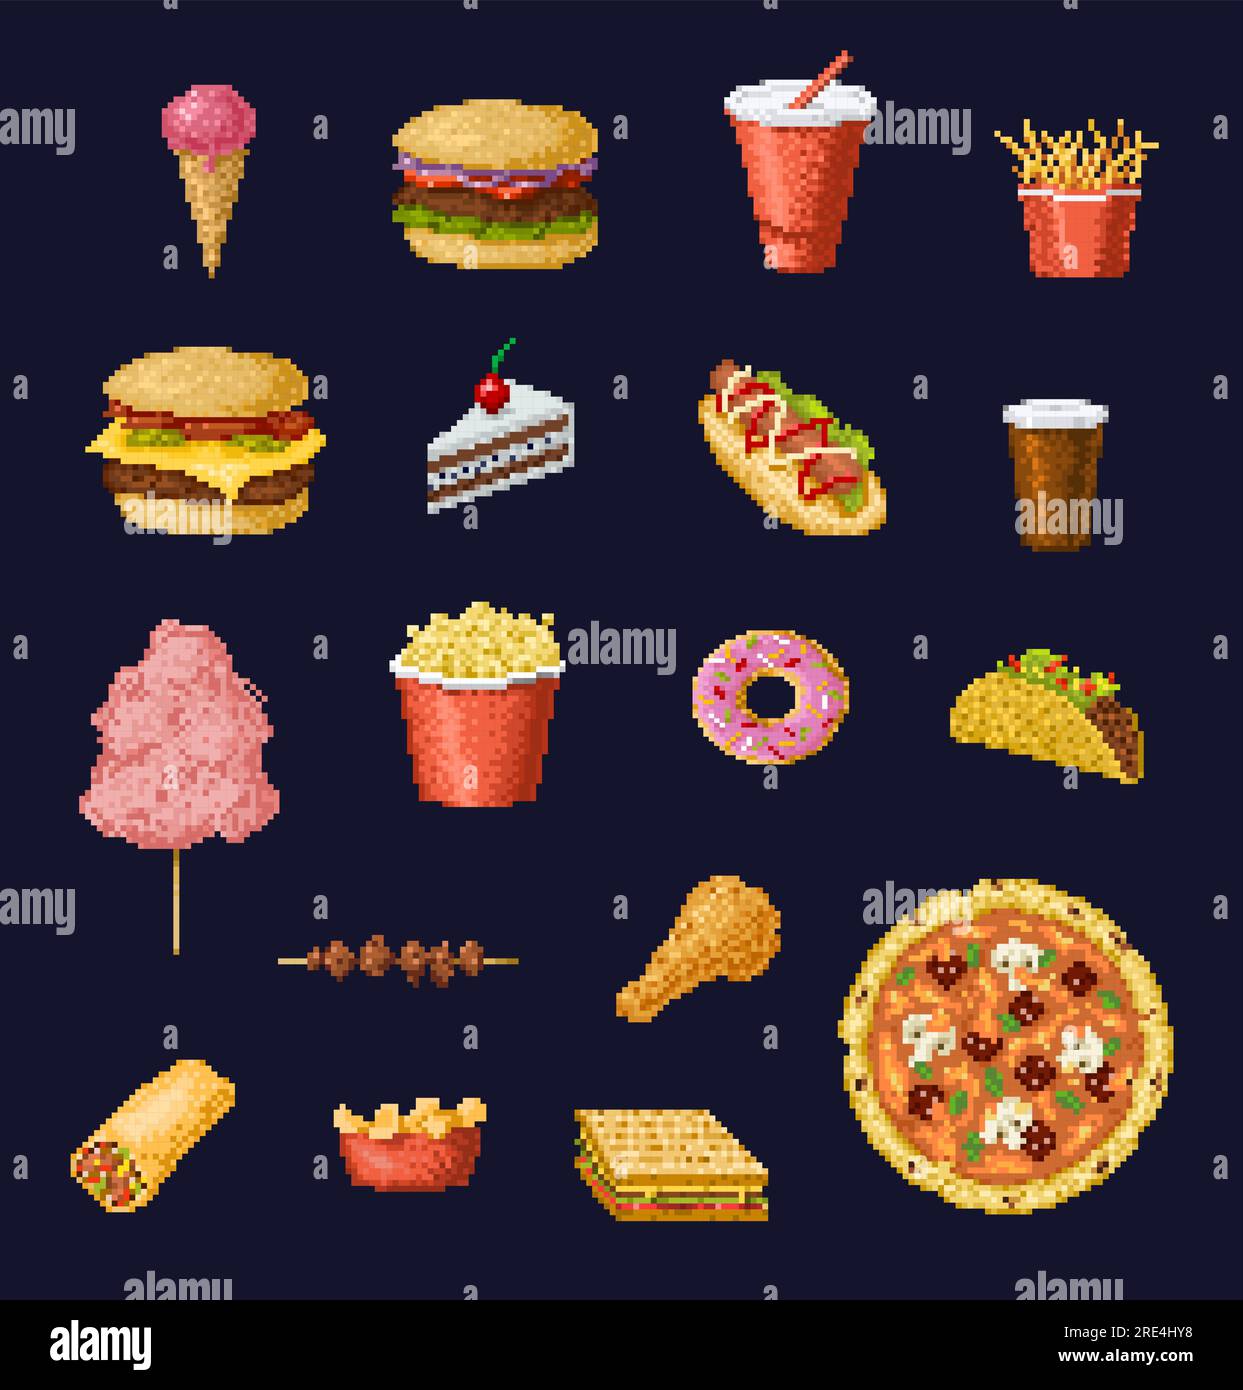 pixel art celular pedindo hambúrguer e batatas fritas no ícone de vetor de  aplicativo de comida para jogo de 8 bits em fundo branco 16137194 Vetor no  Vecteezy